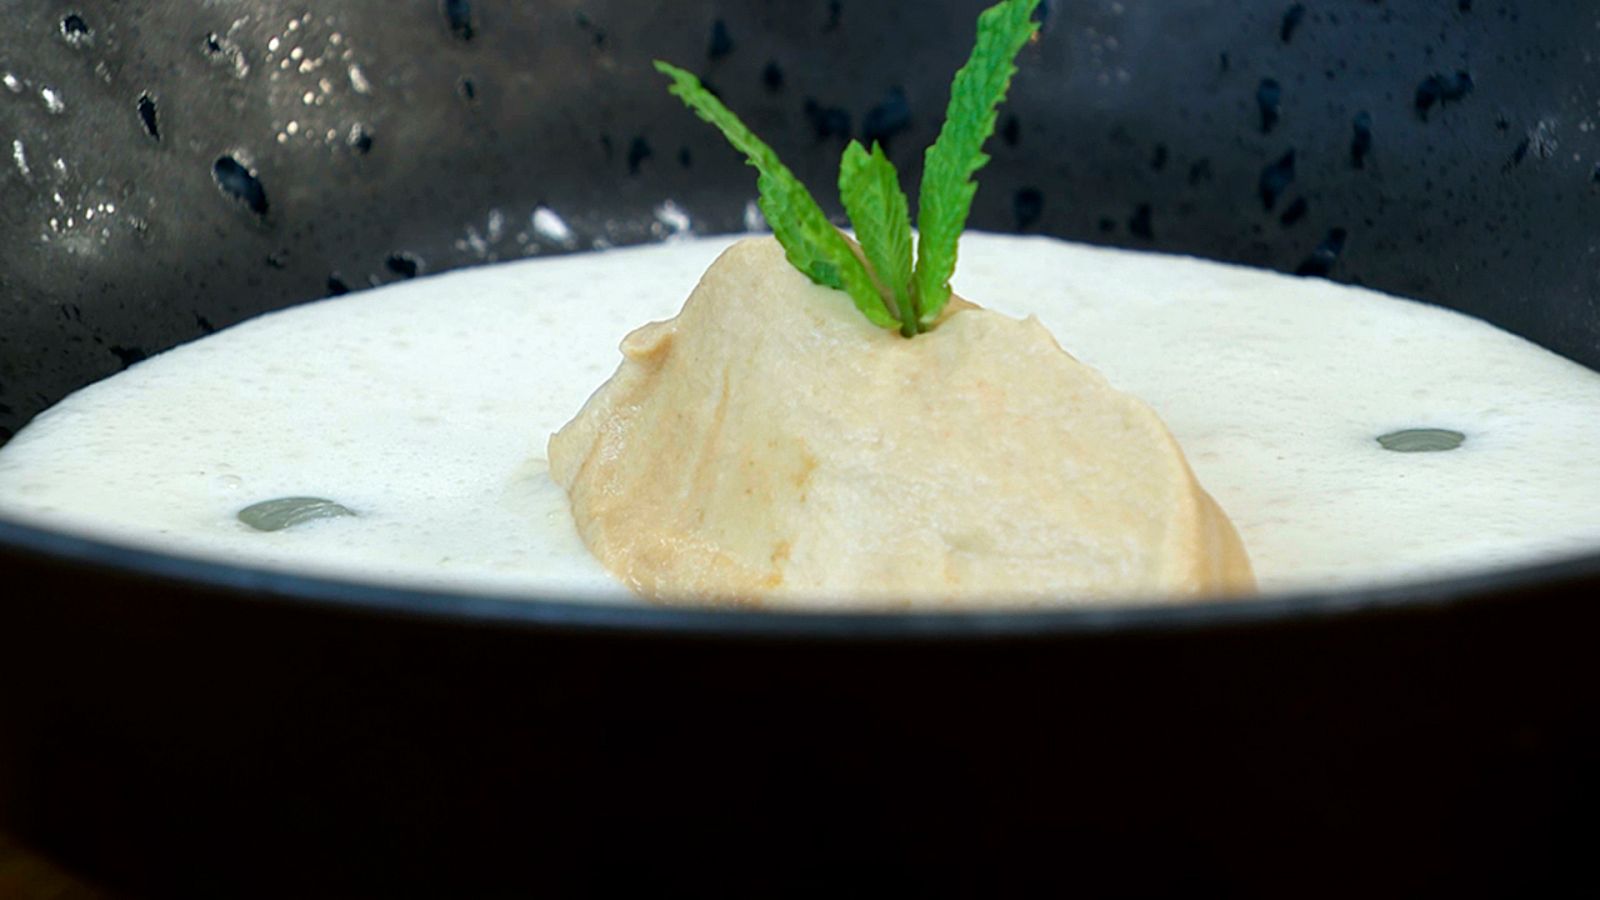 Torres en la cocina - Crema arroz con leche